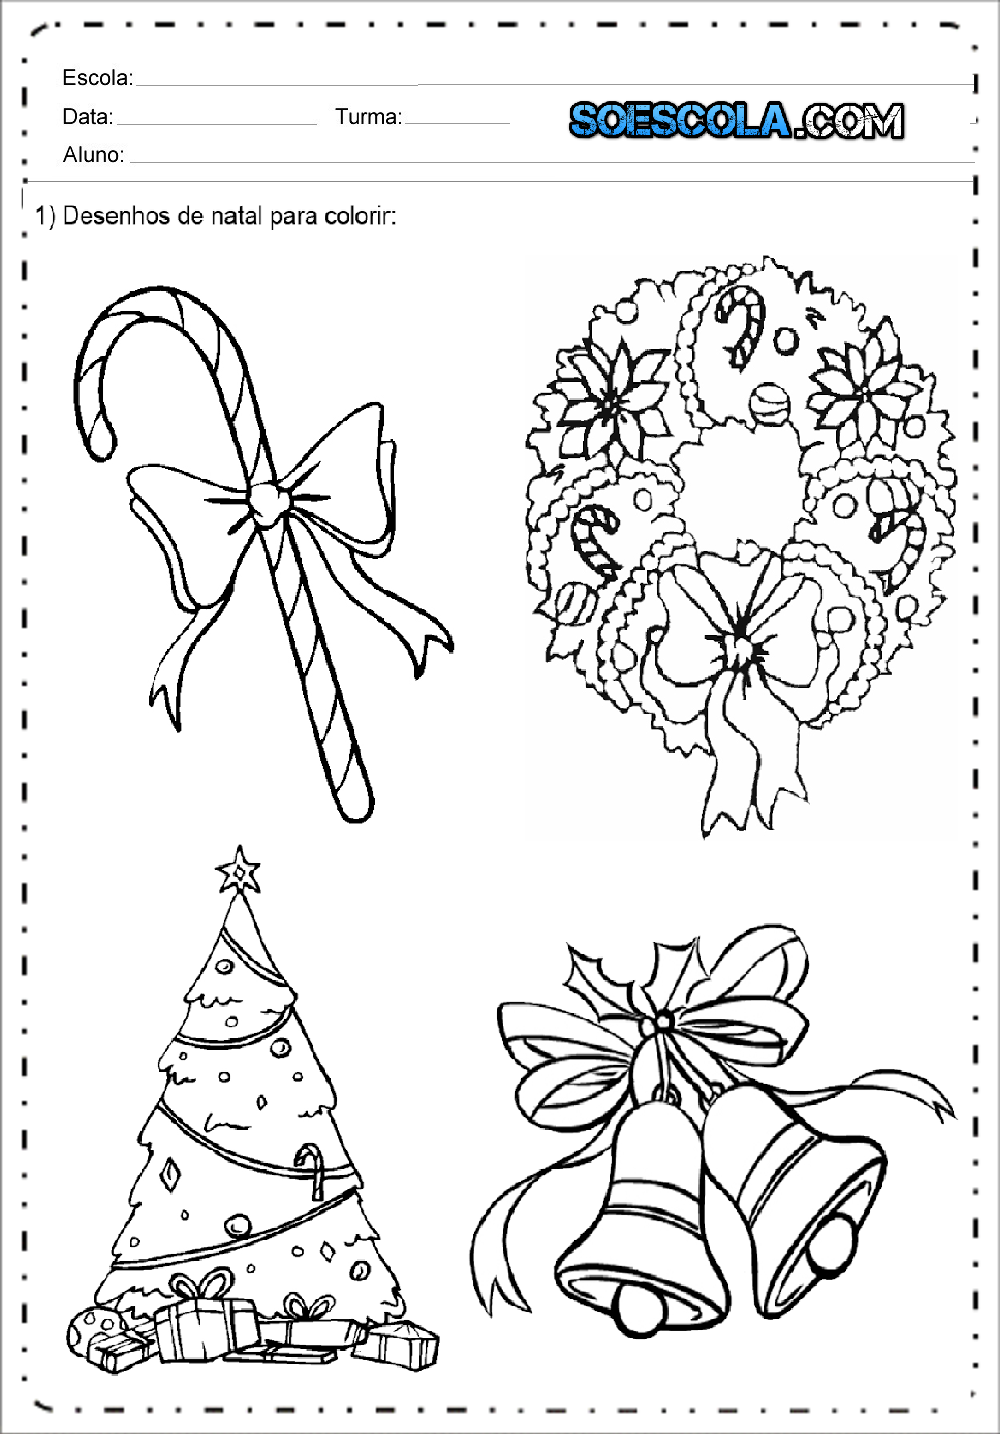 Desenhos de natal para colorir e imprimir – Desenhos Natalinos